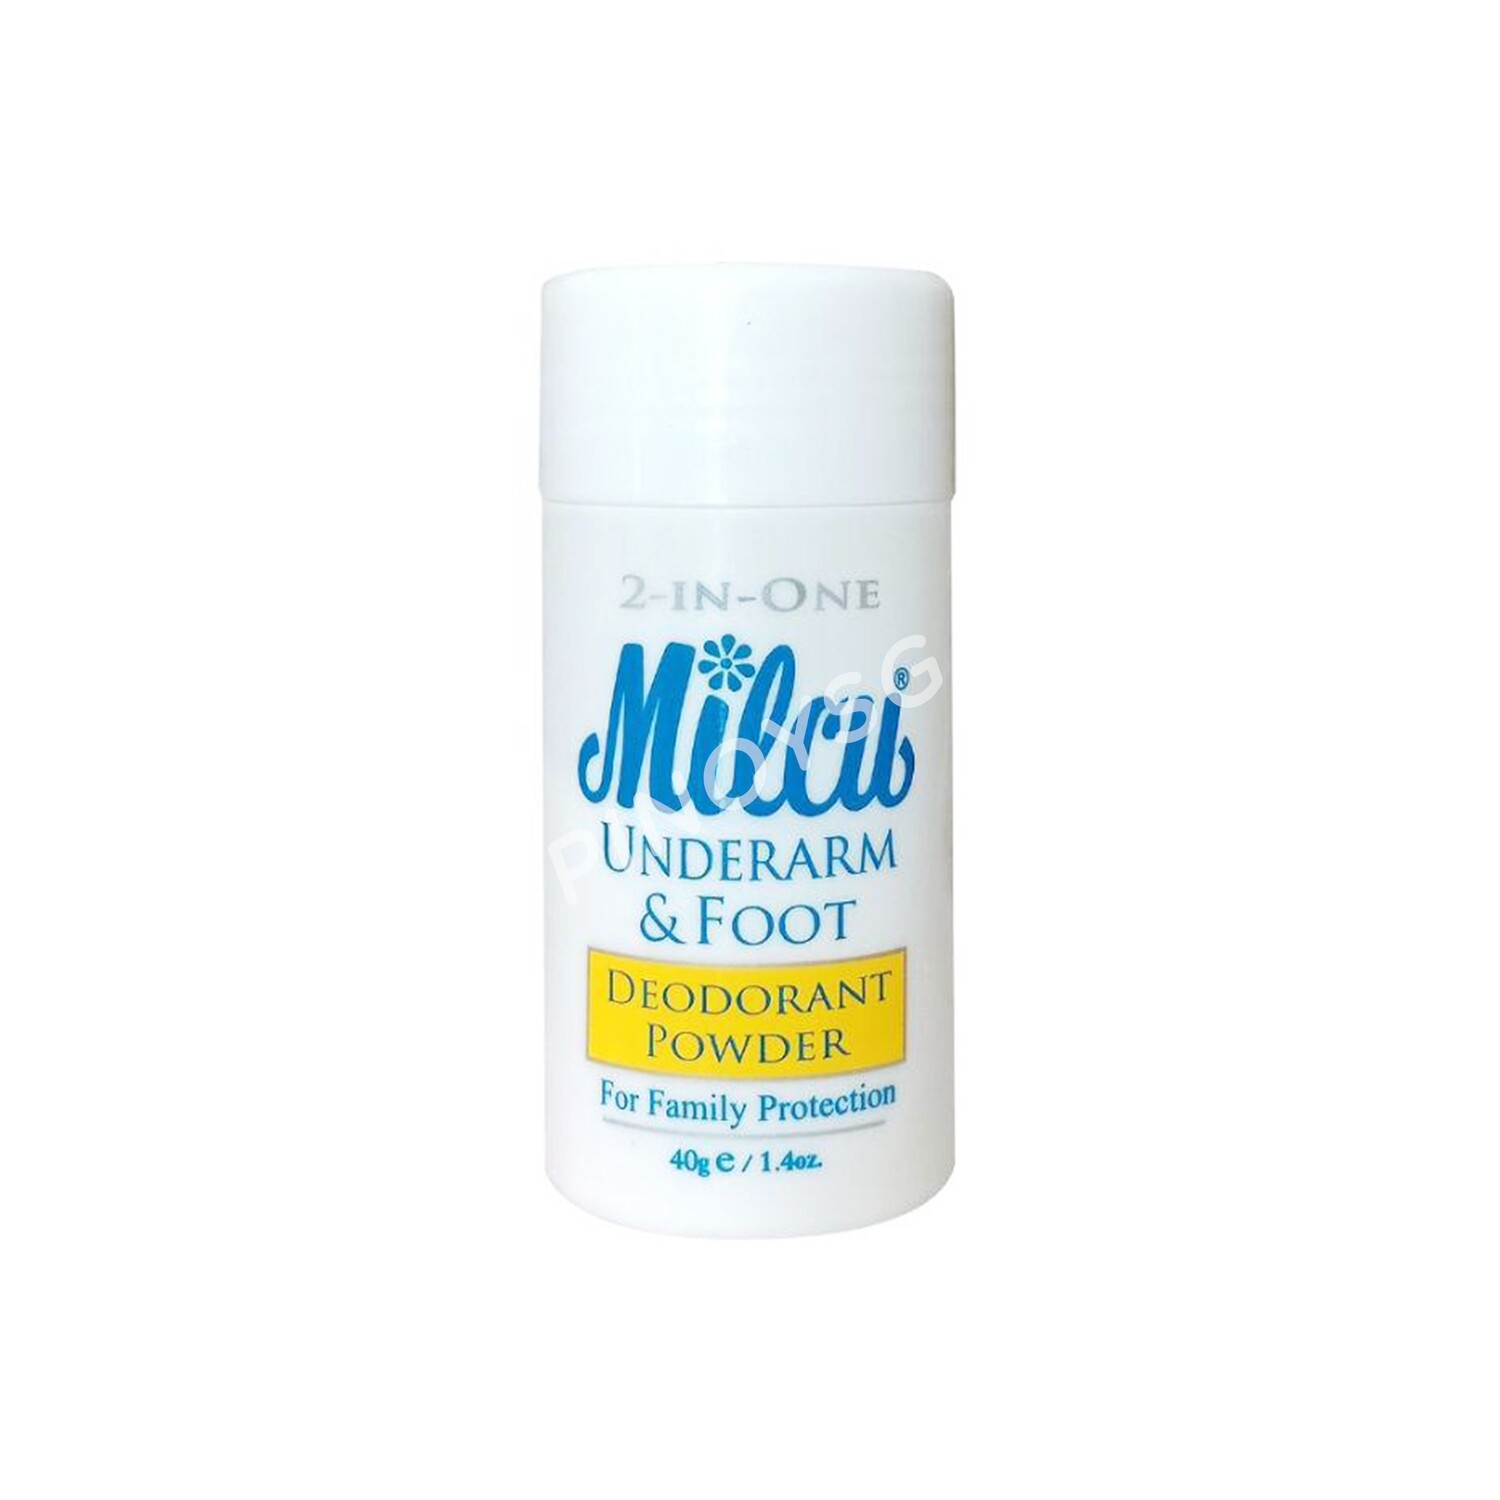 Milcu Underarm & Foot Deodorant Powder, 40g